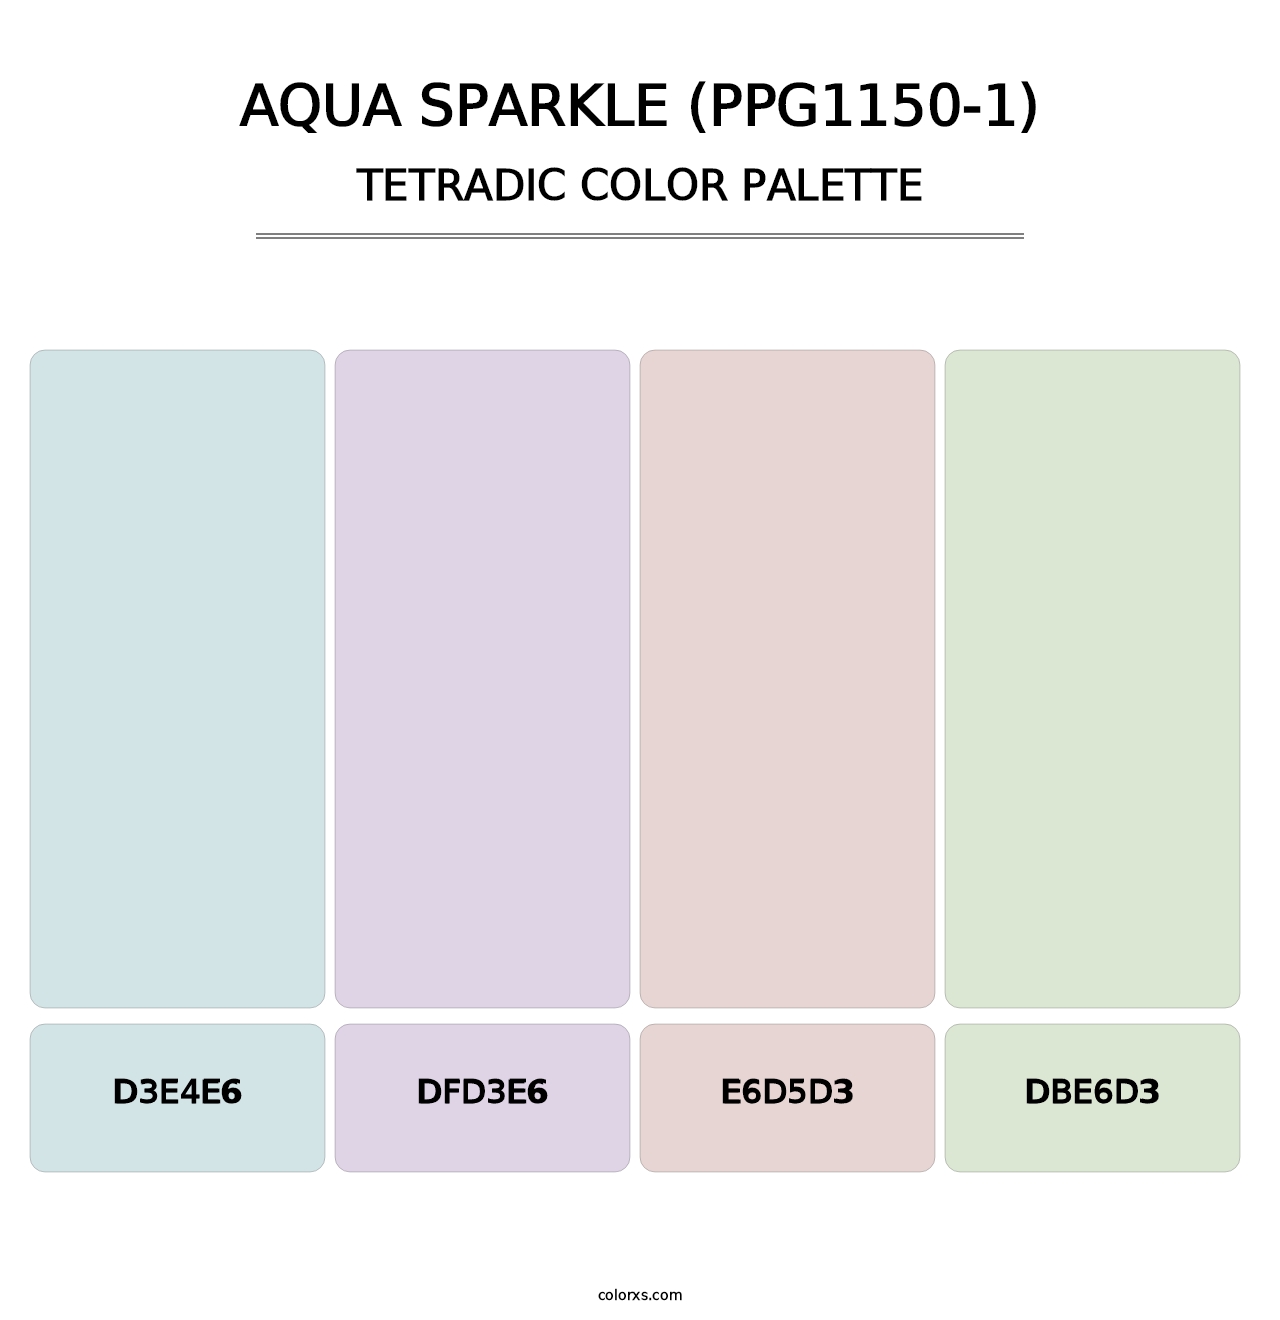 Aqua Sparkle (PPG1150-1) - Tetradic Color Palette